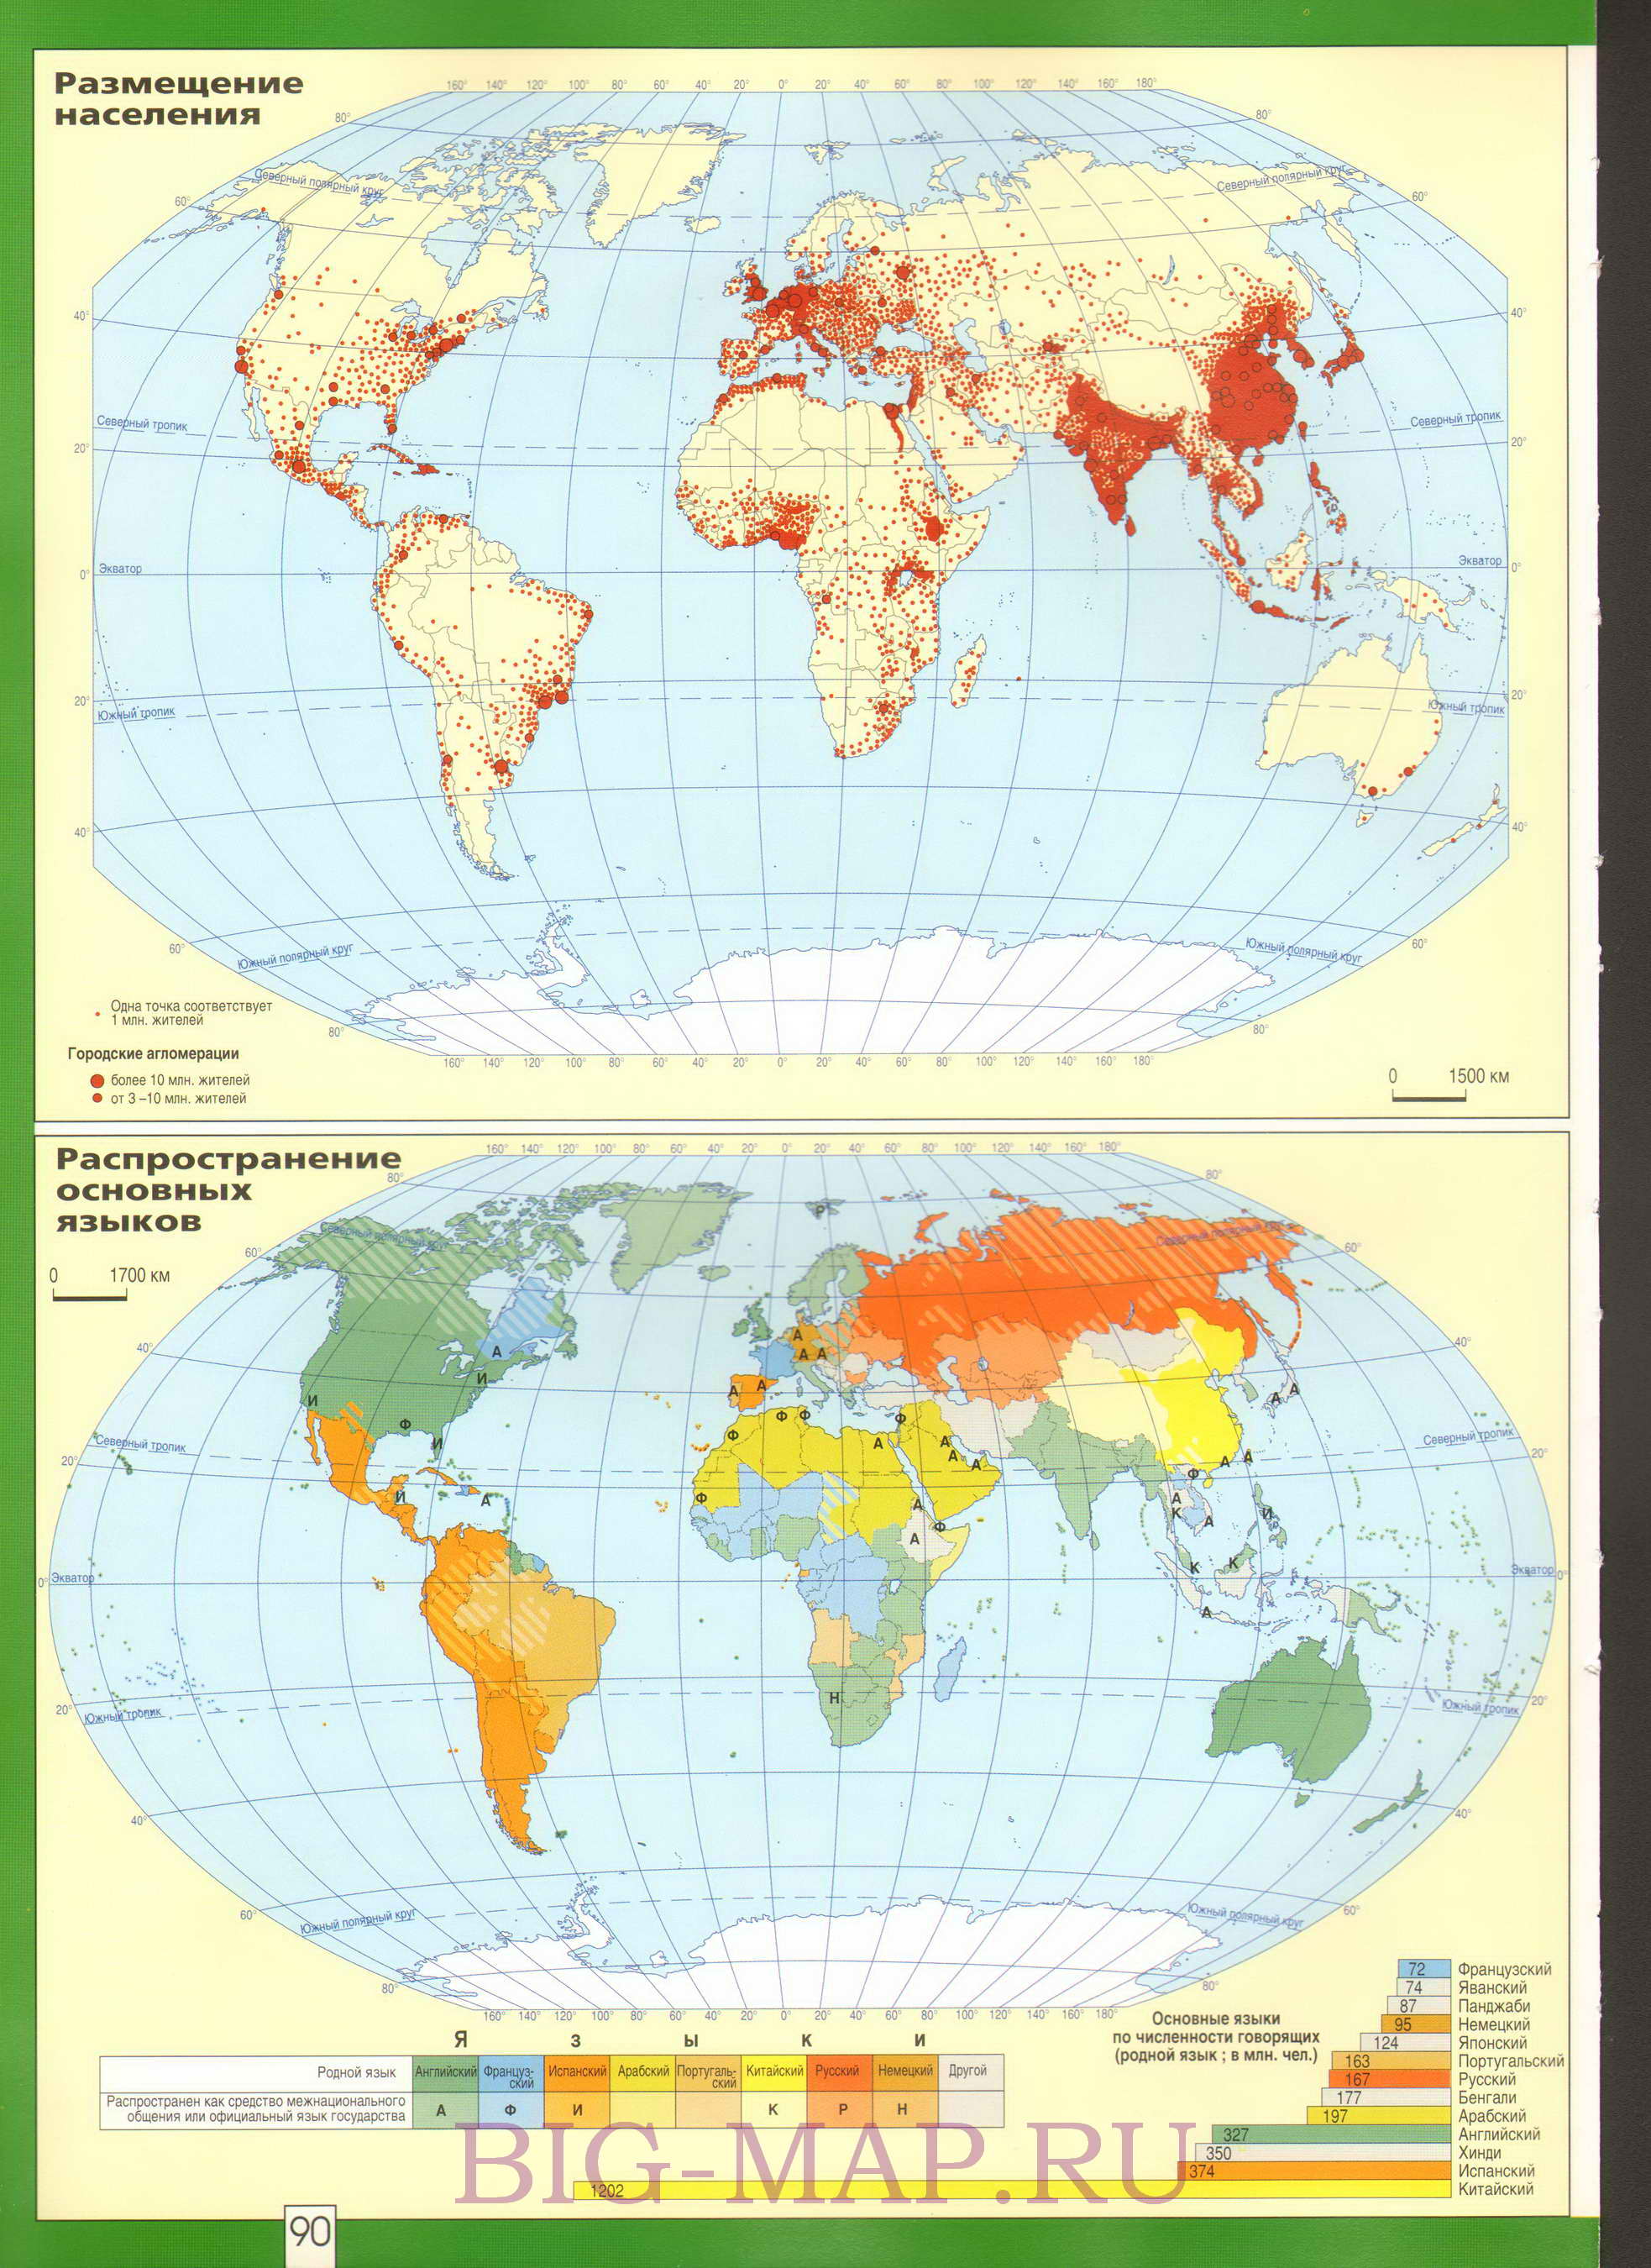 Карта размещения населения мира. Карта плотности населения на земном шаре и распространения основных языков, A0 - 